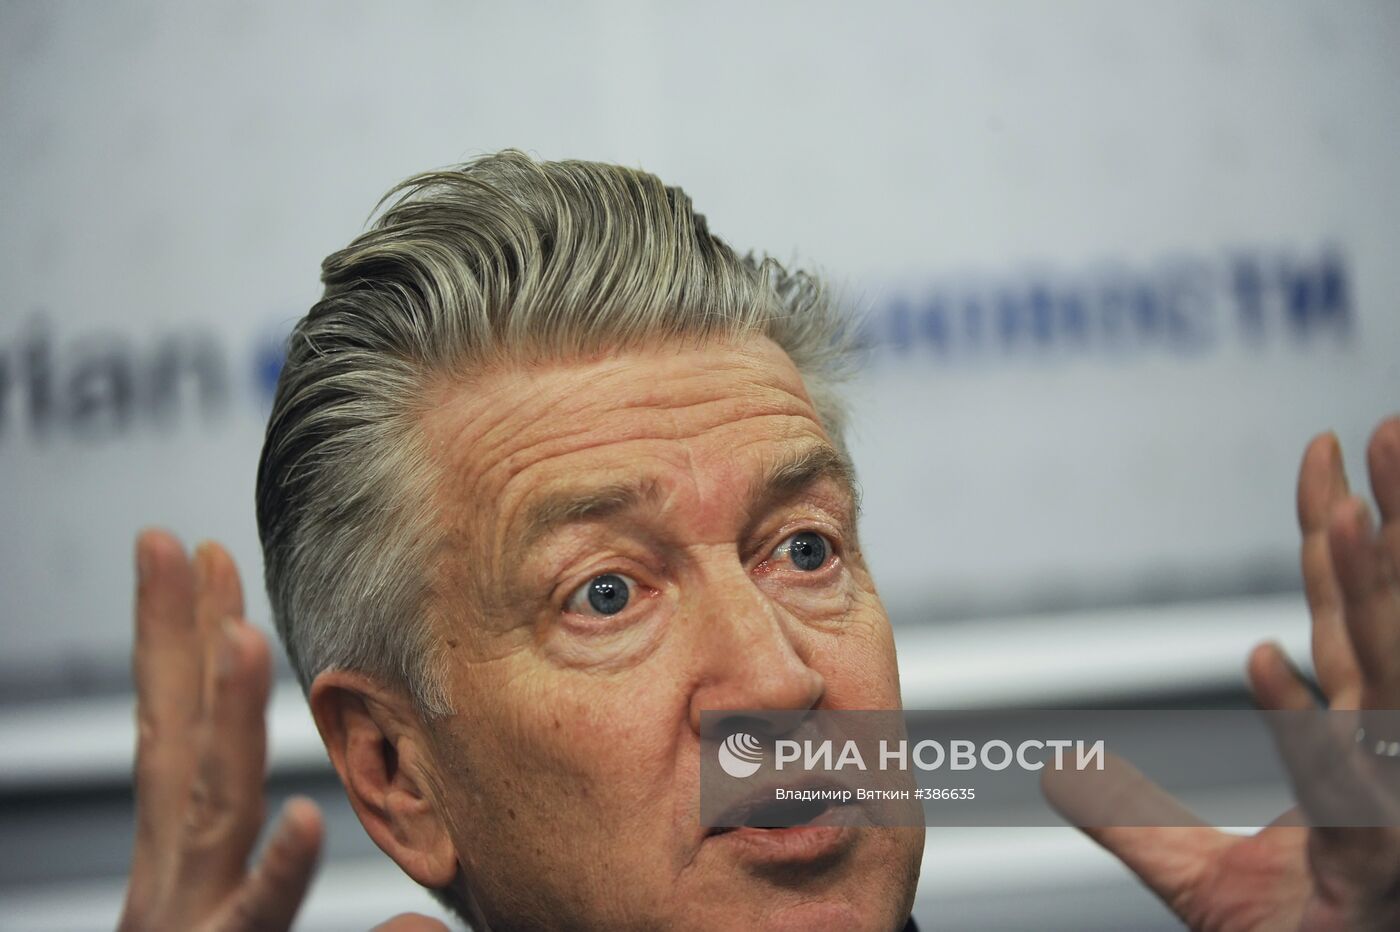 Пресс-конференция Дэвида Линча в РИА Новости